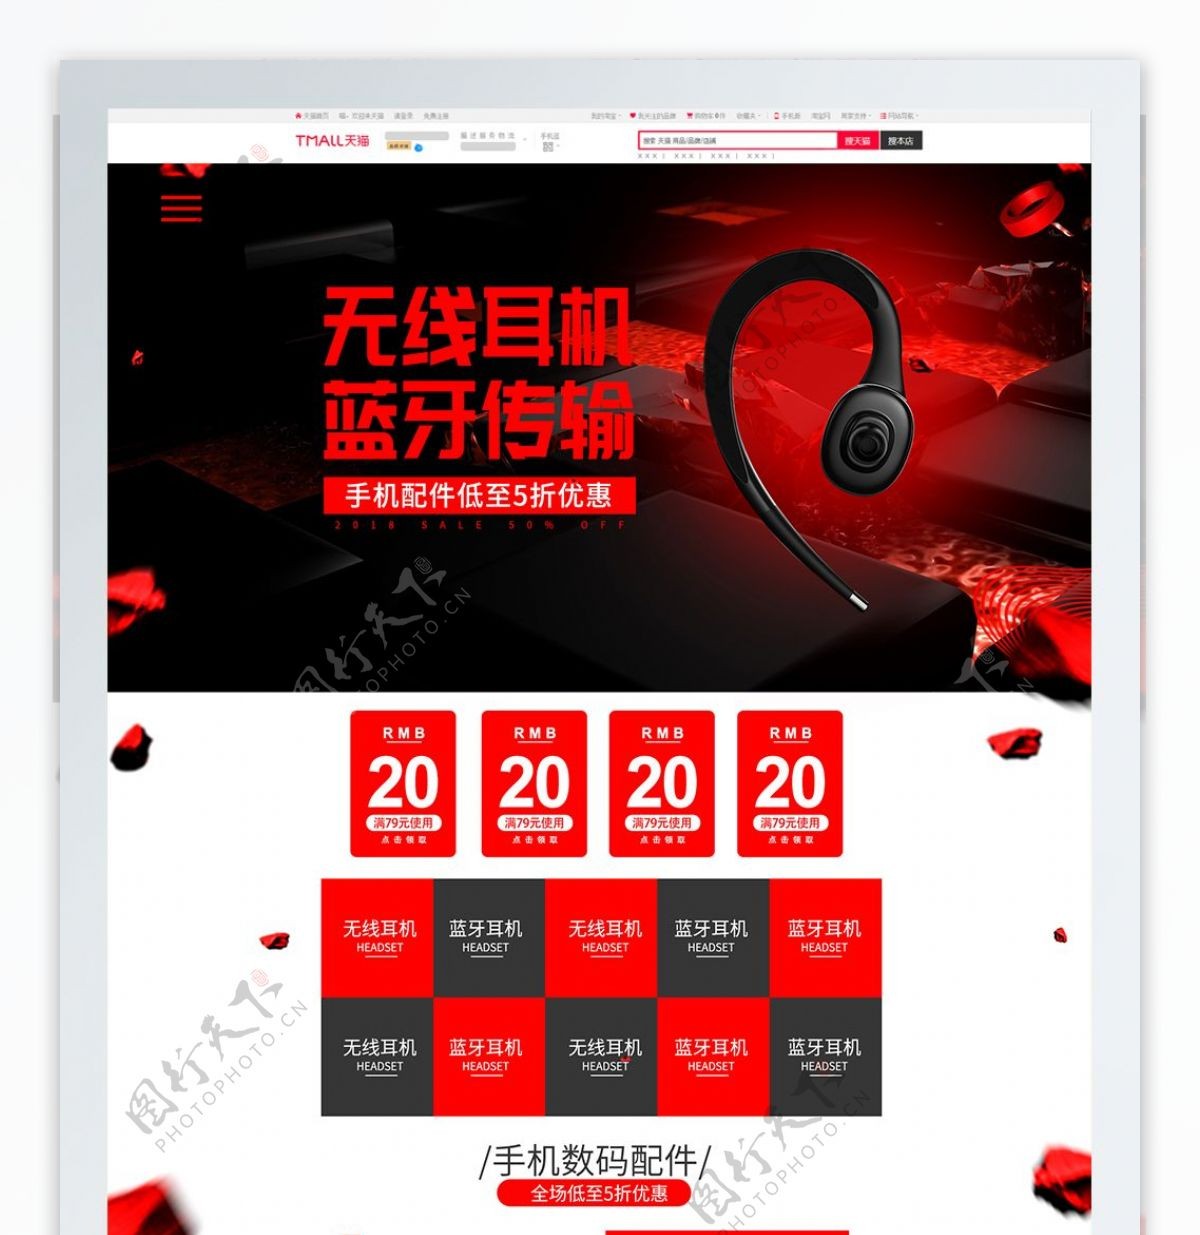 红黑炫酷手机数码配件产品首页促销活动模板